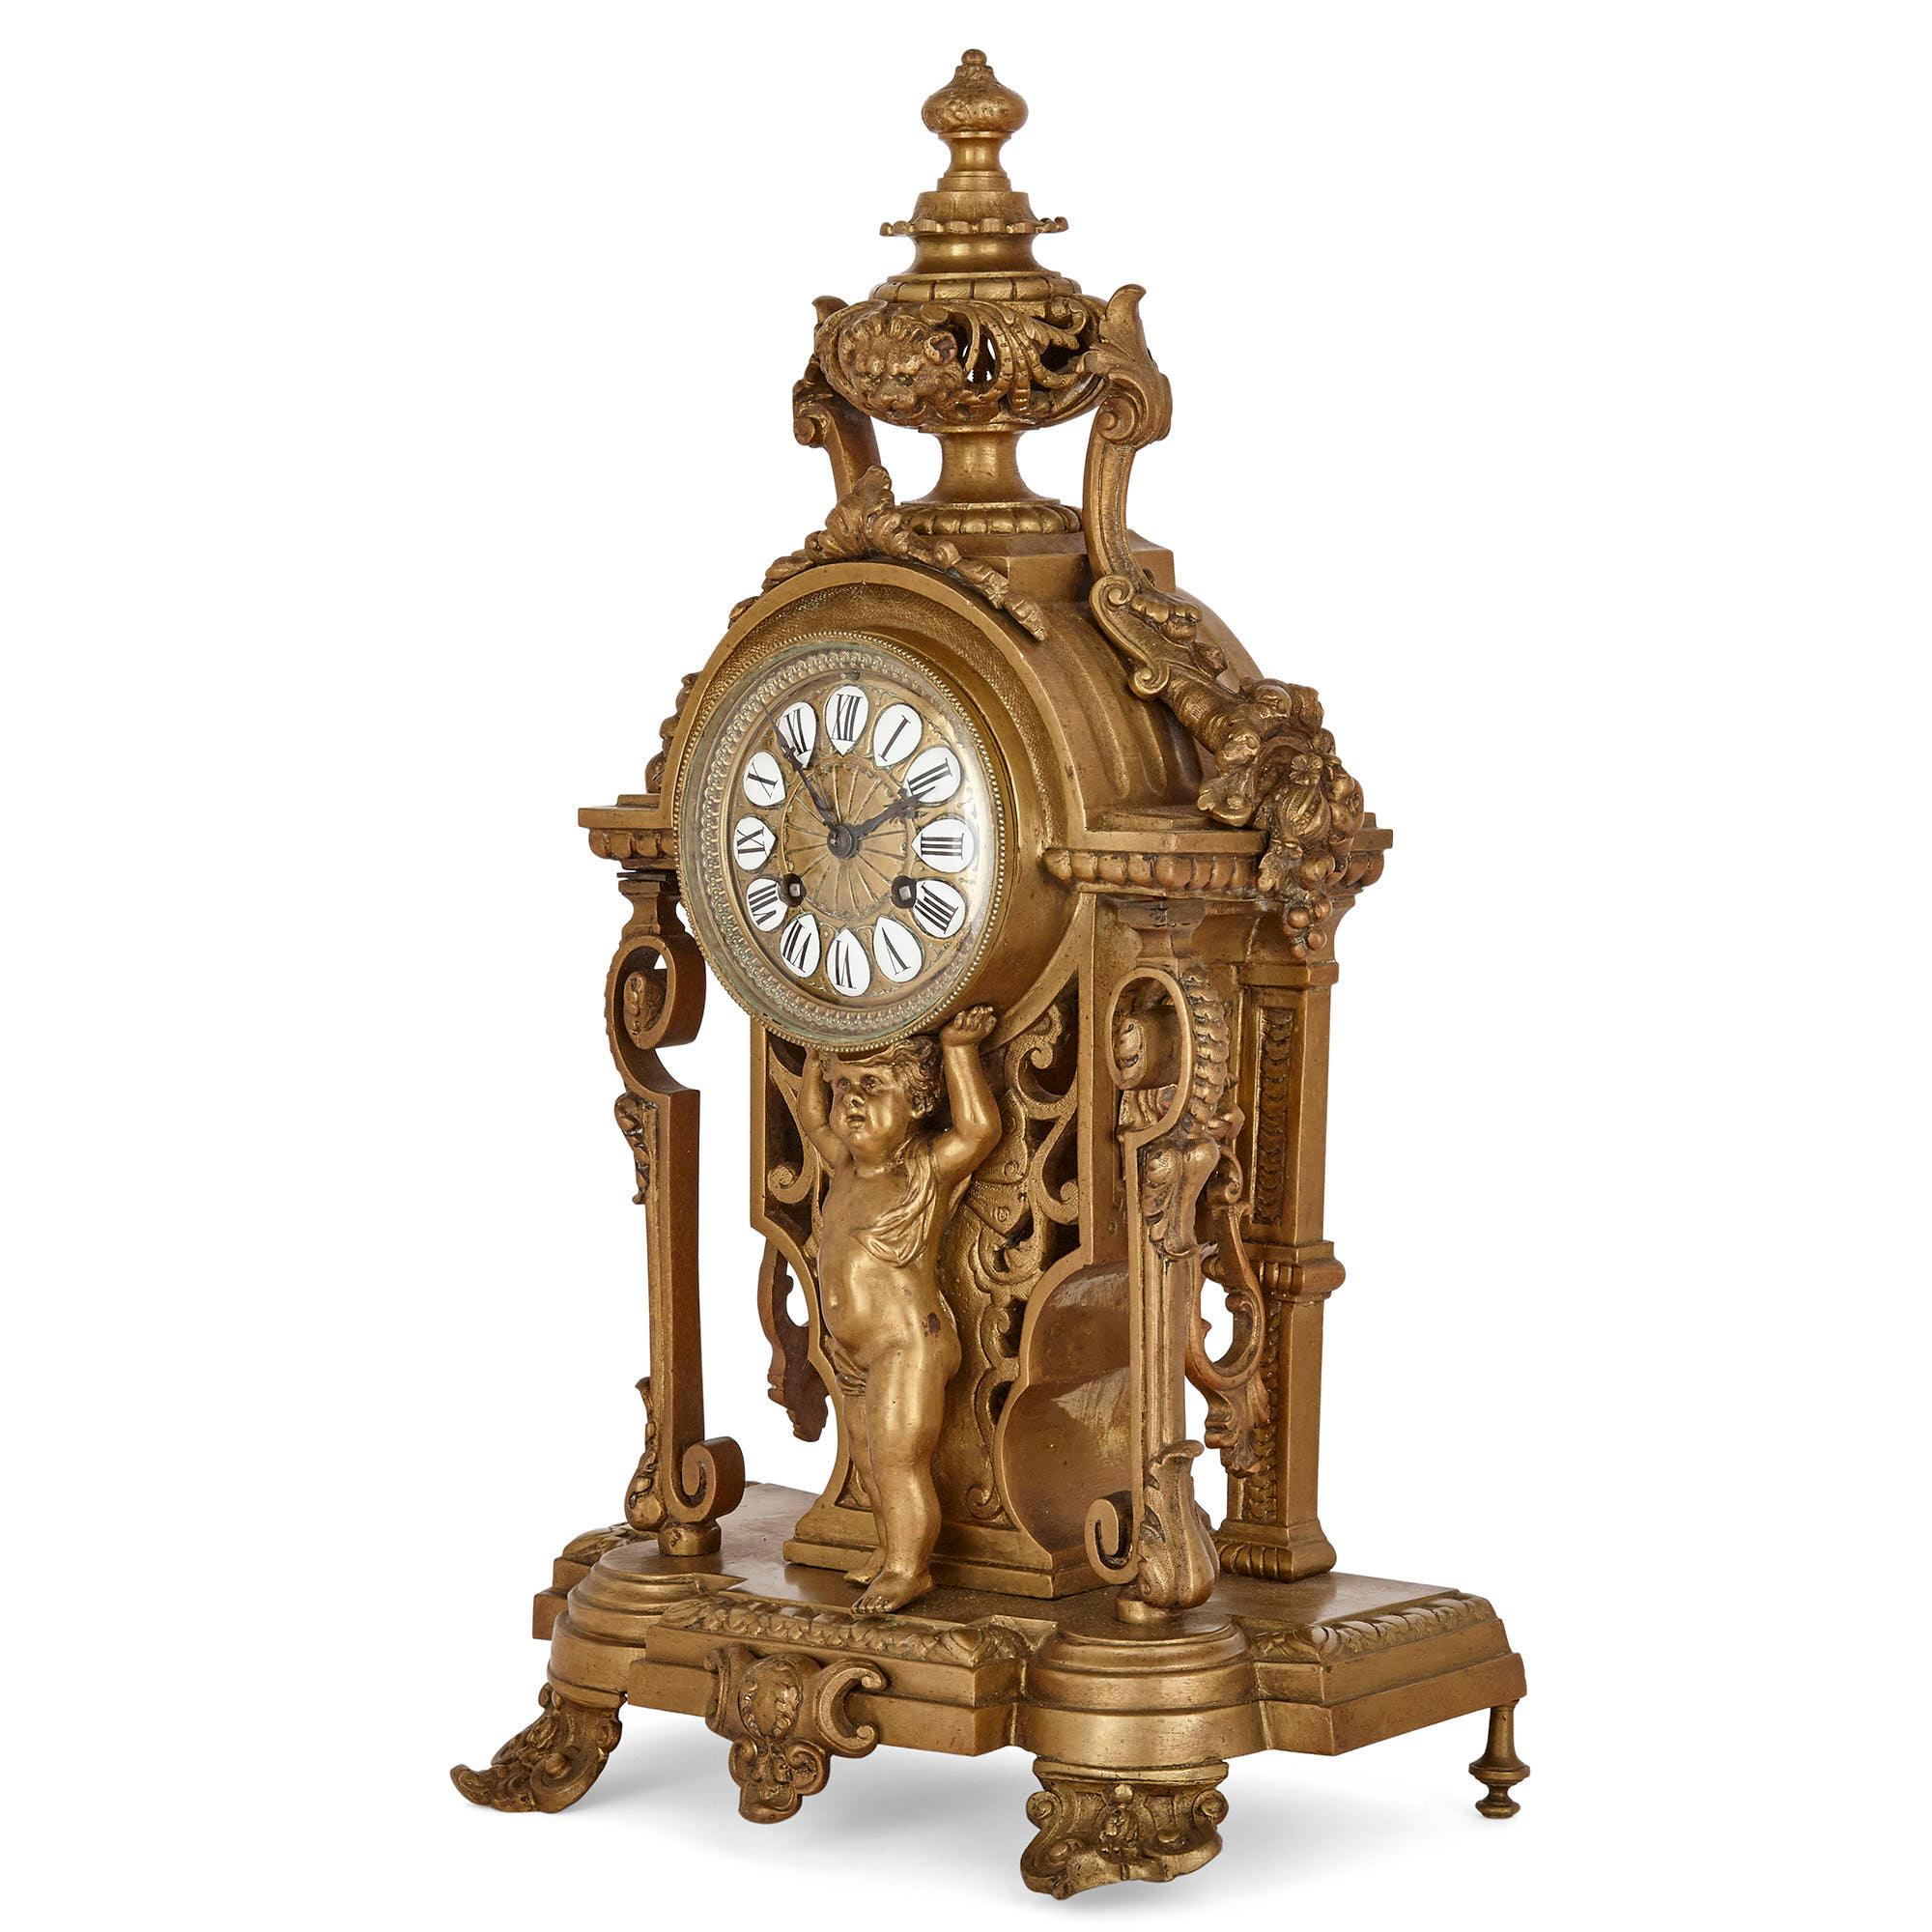 Cet ensemble comprend une horloge de cheminée et une paire de candélabres. Fait inhabituel, l'horloge et le candélabre sont entièrement construits en bronze doré. Le cadran en bronze de l'horloge de cheminée porte des heures en chiffres romains sur